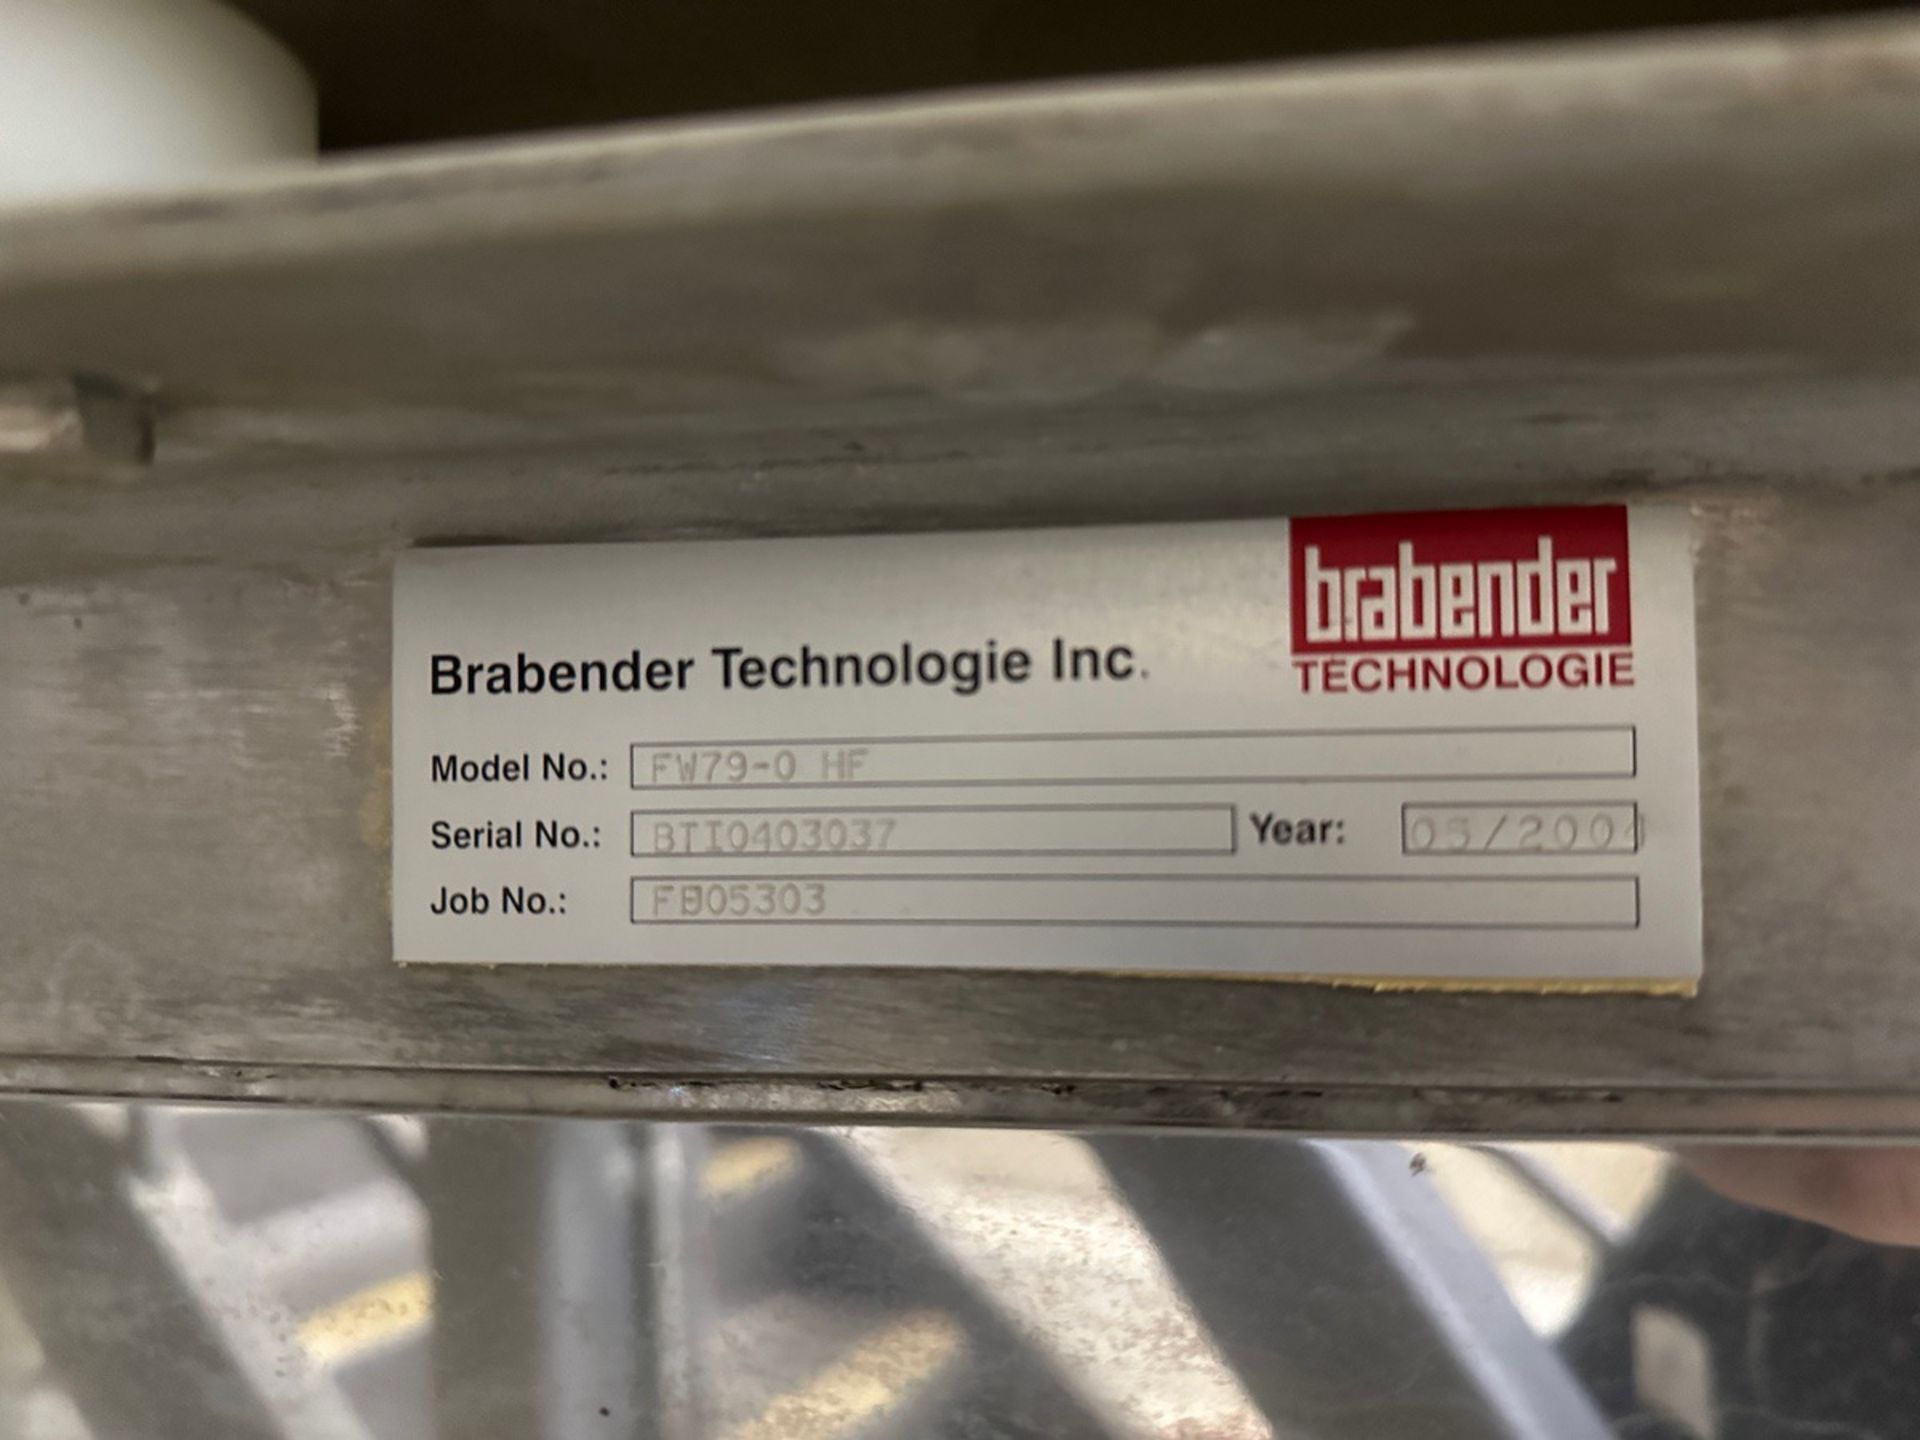 Brabender Stainless Steel Ingredient Hopper - Model FW79-0 HF, S/N BT10403037 - Image 6 of 6